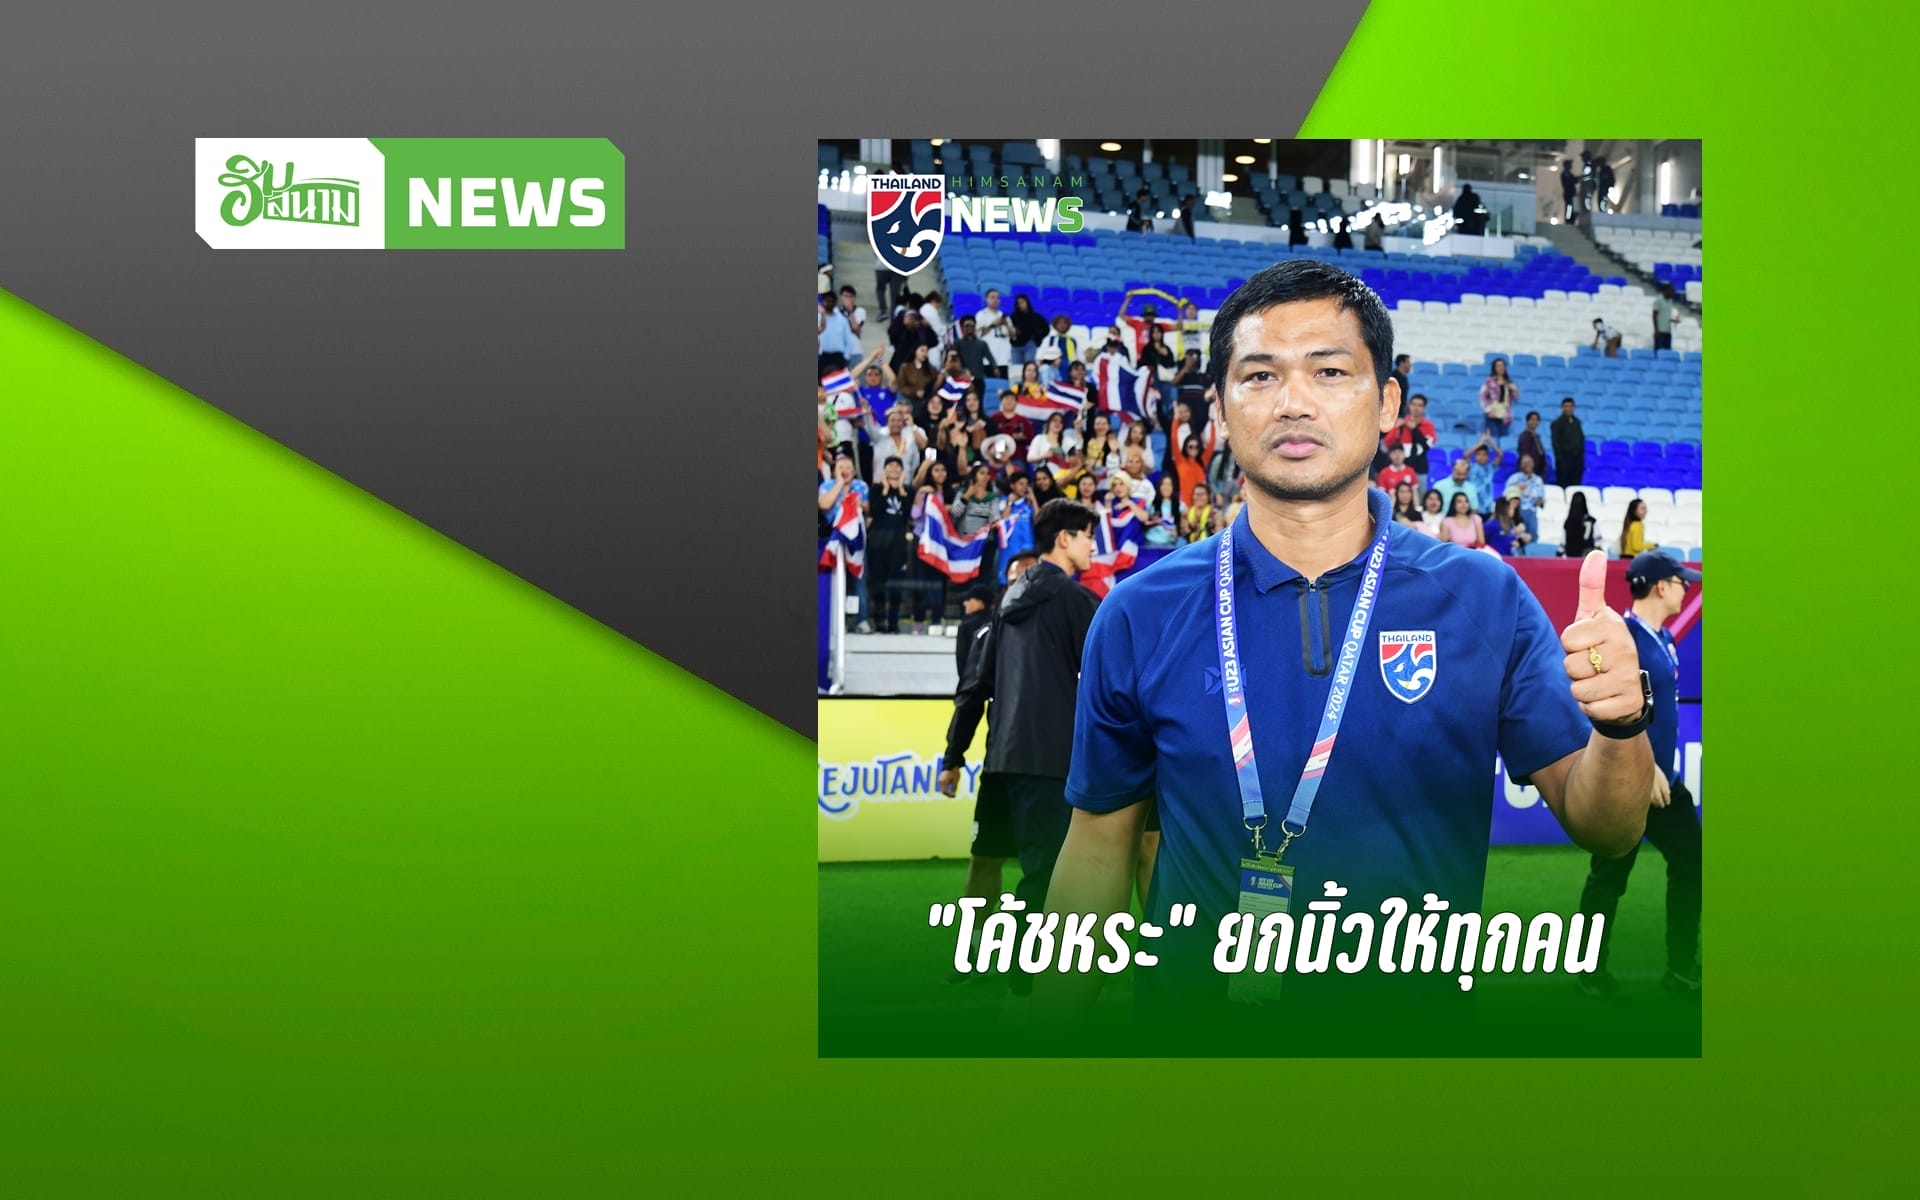 “โค้ชหระ” ยกเครดิตให้ทุกคน หลังทีมชาติไทย U23 ประเดิมคว้าชัยปรีโอลิมปิก